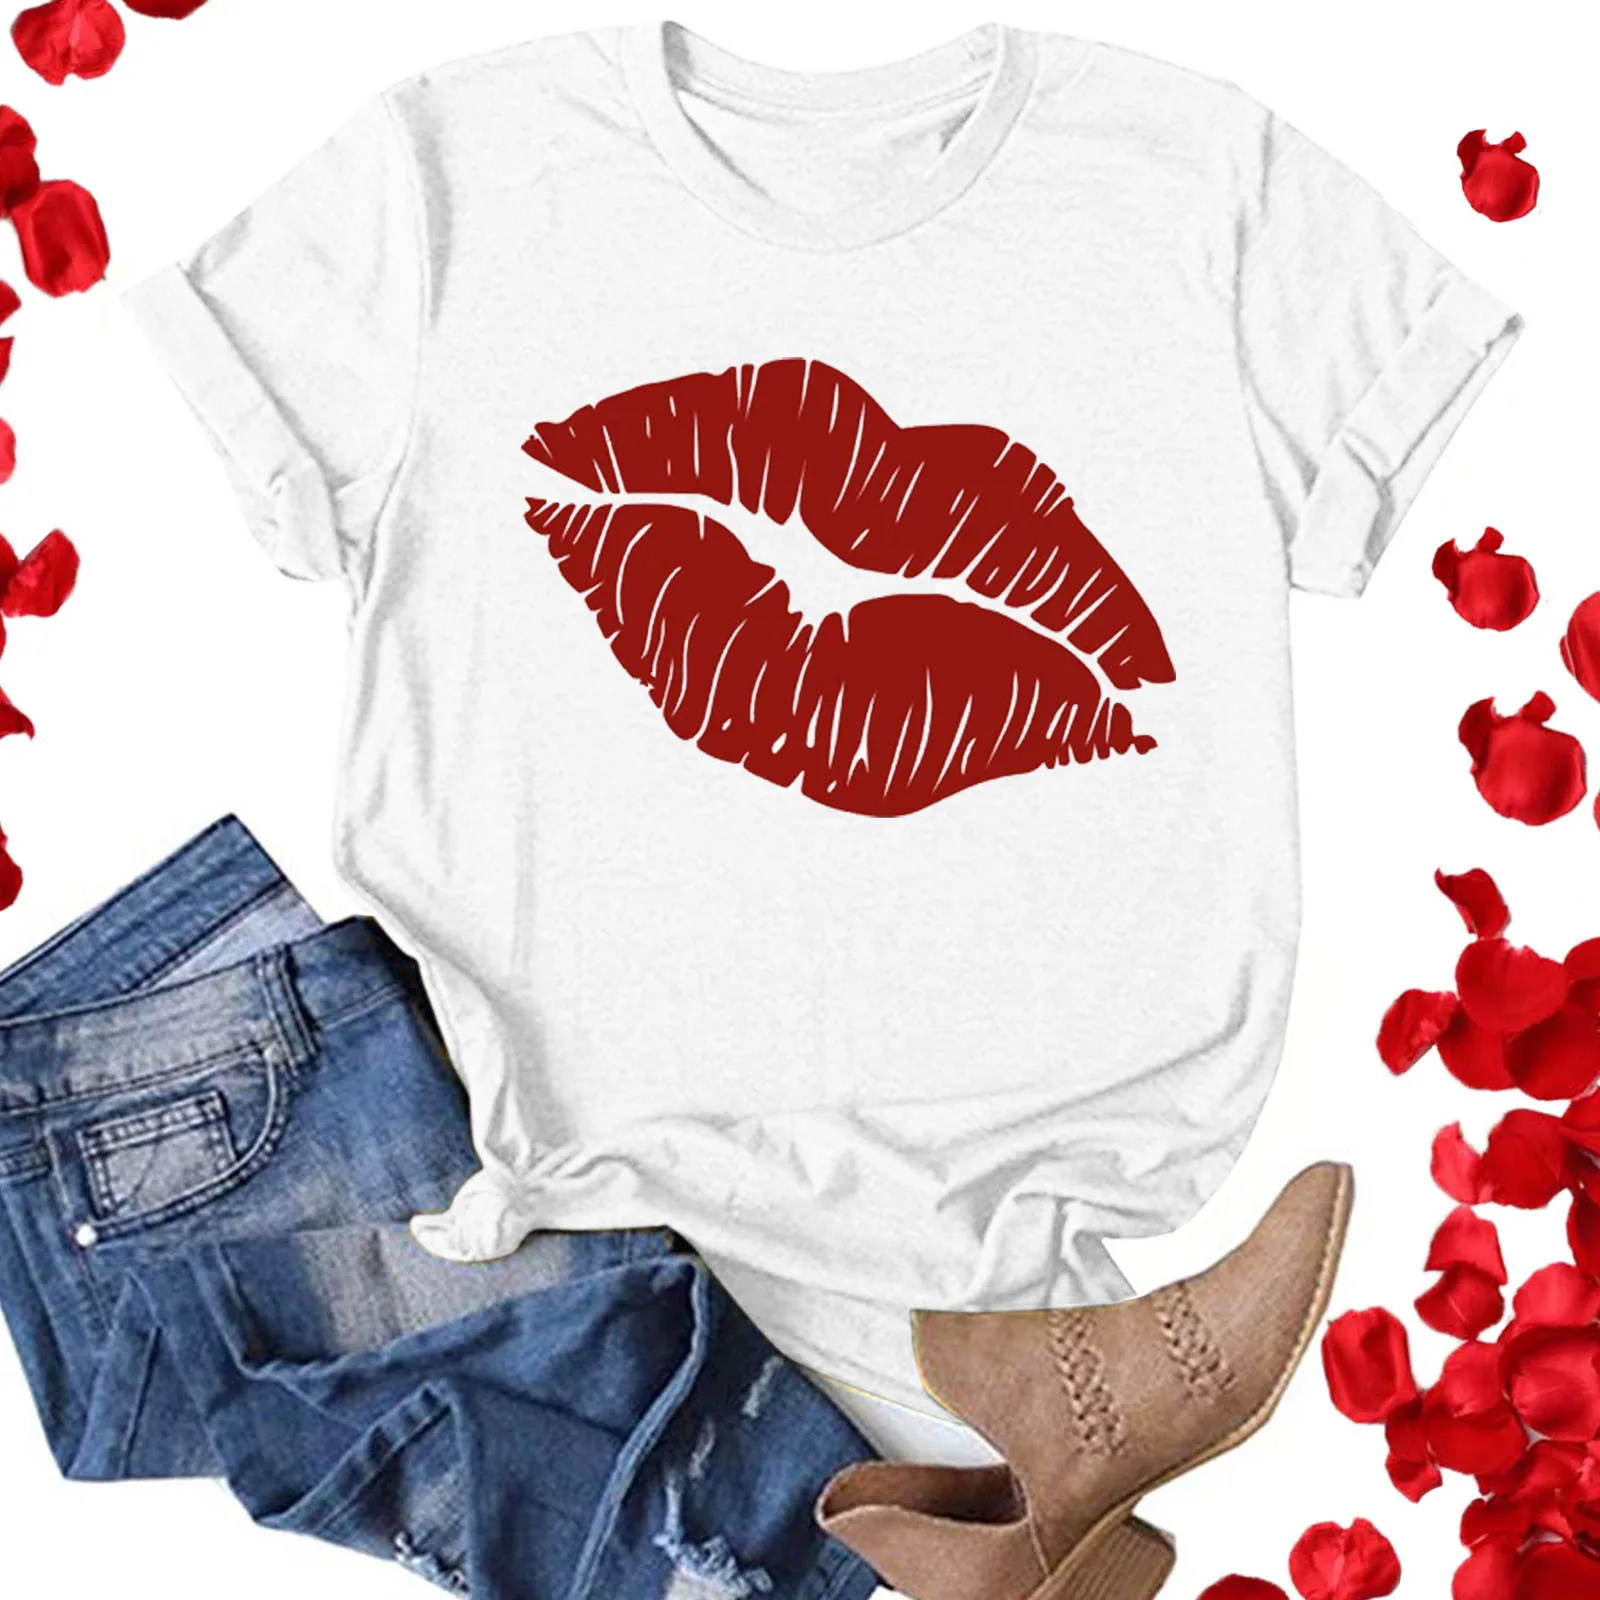 

Женская футболка, футболки на День святого Валентина, парная футболка, топы для влюбленных, спортивная летняя Праздничная футболка с коротким рукавом и губами